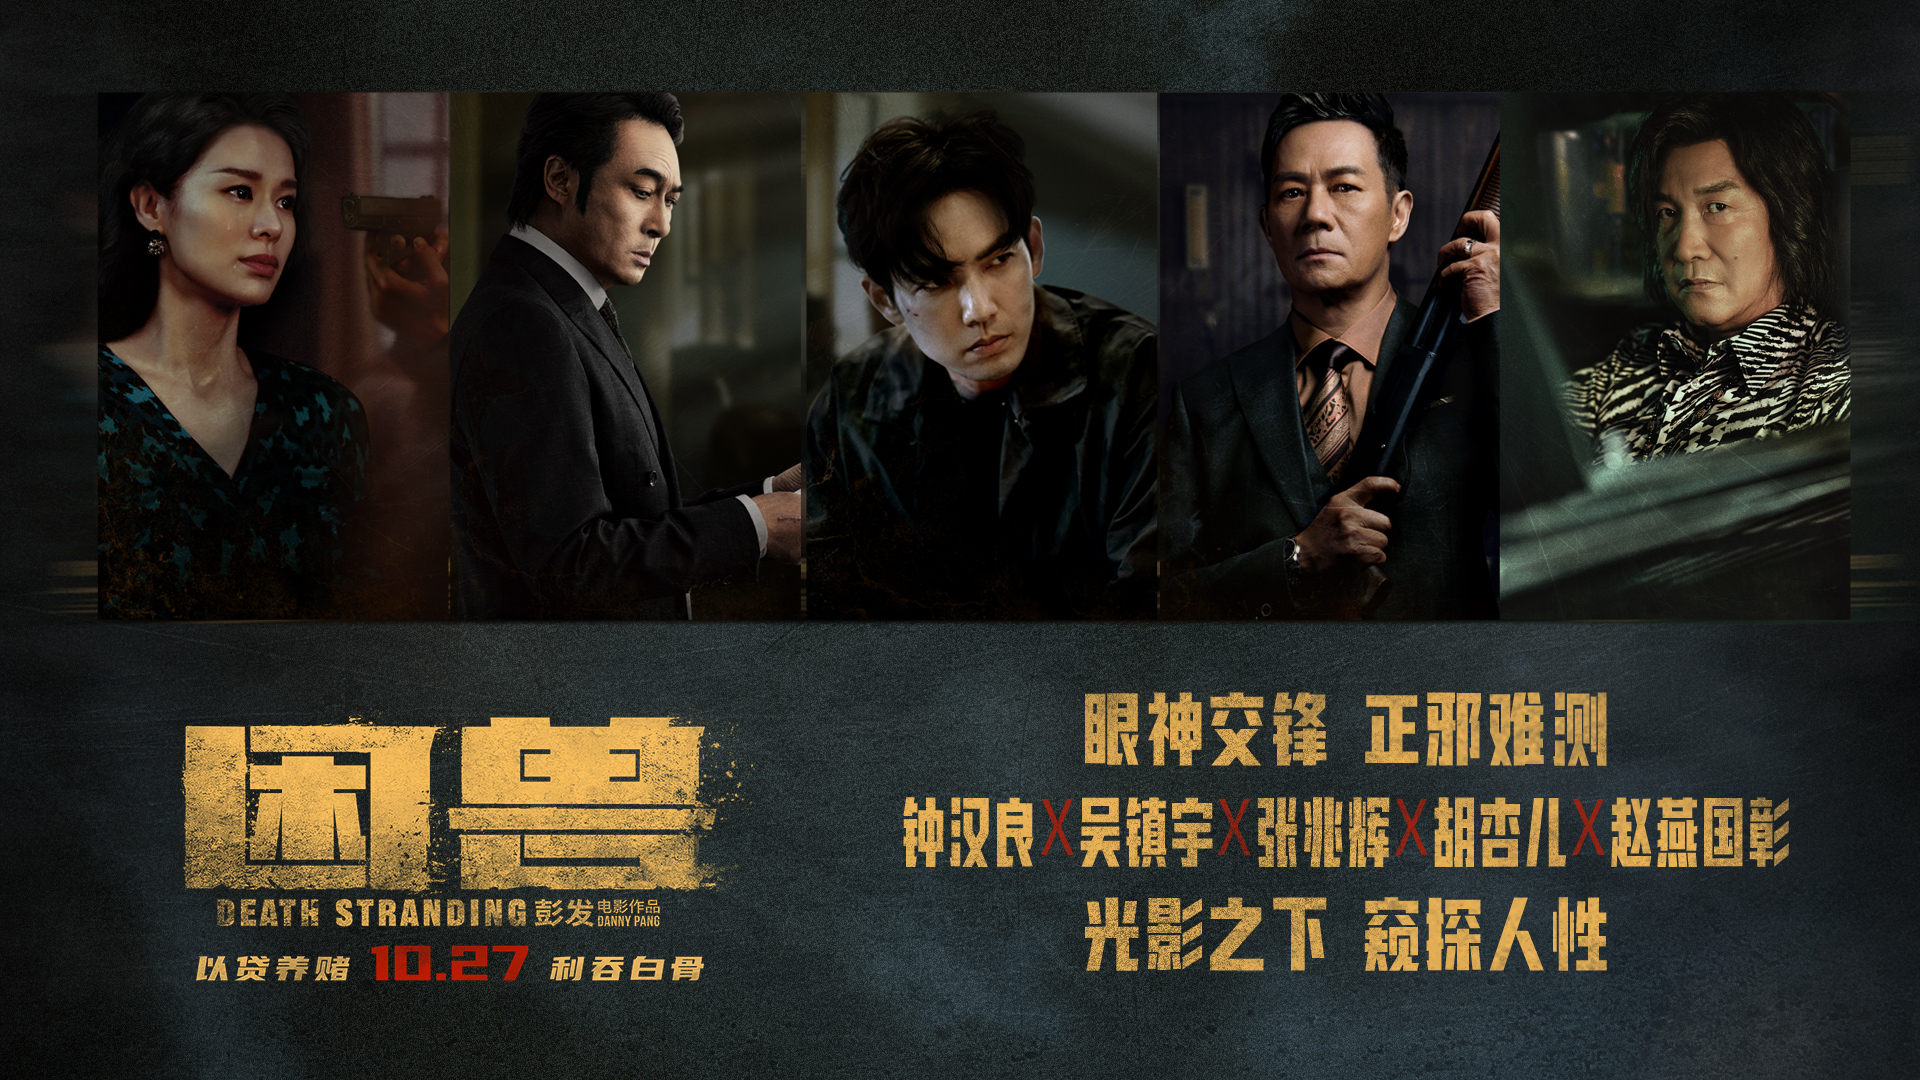 电影《困兽》揭示了卡西诺曾预言钟汉良、吴镇宇和张兆辉将上演一场命运之战